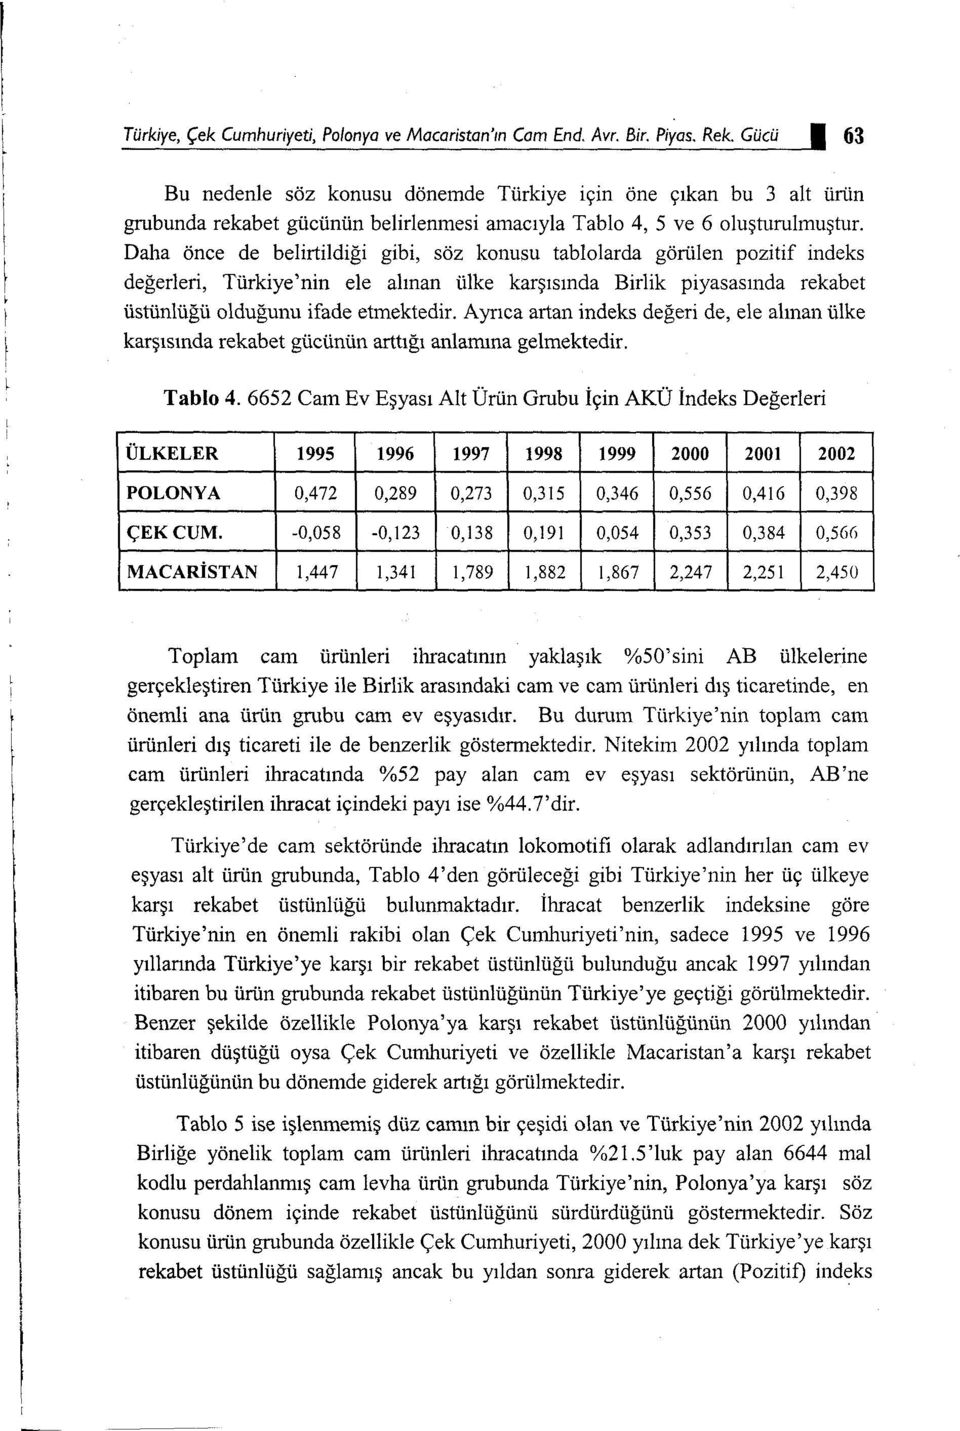 Daha önce de belirtildiği gibi, söz konusu tablolarda görülen pozitif indeks değerleri, Türkiye'nin ele alınan ülke karşısında Birlik piyasasında rekabet üstünlüğü olduğunu ifade etmektedir.